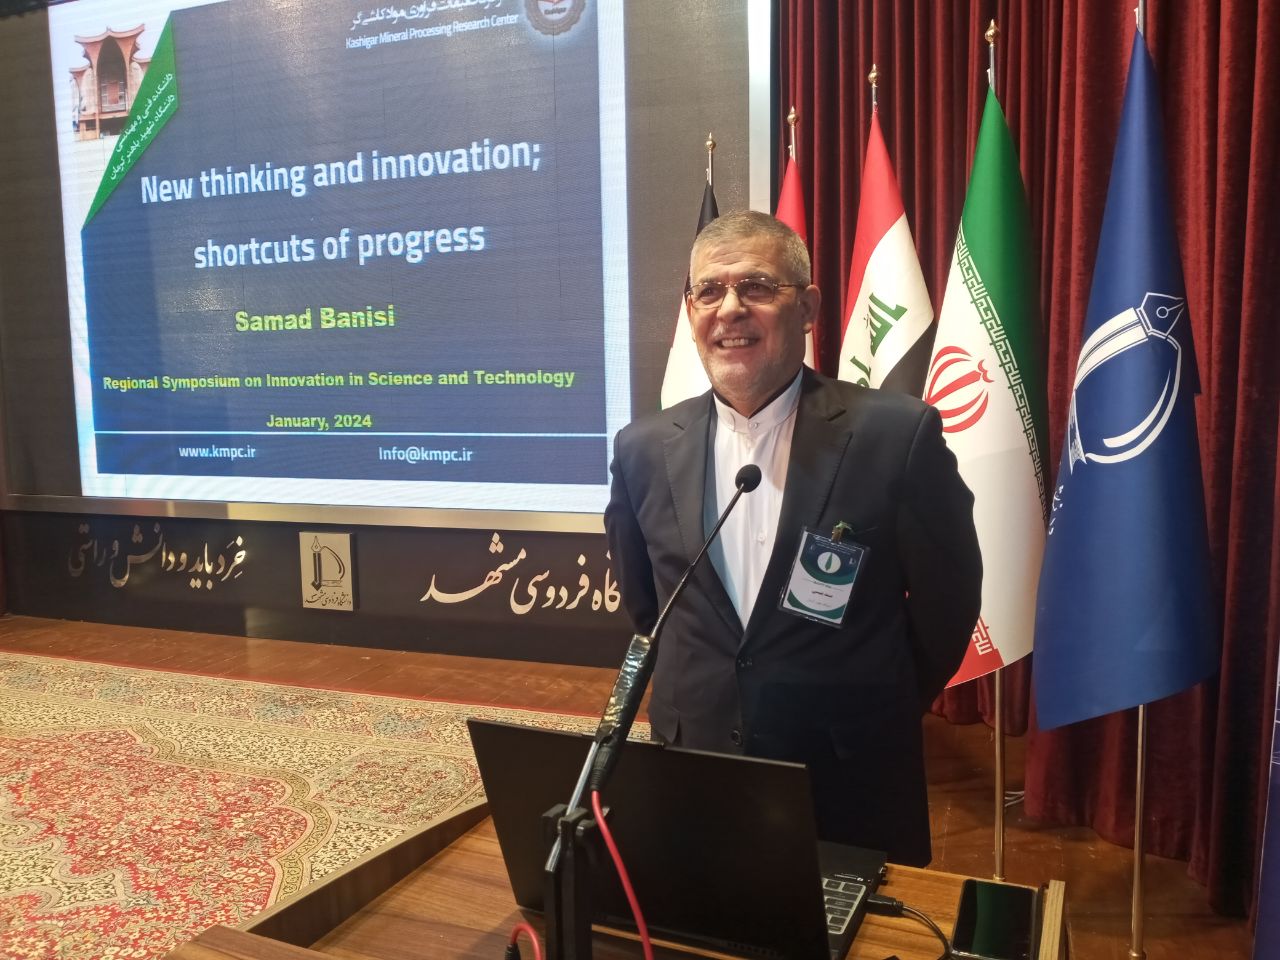 سخنرانی کلیدی دکتر صمد بنیسی در سمپوزیوم منطقه ای نوآوری در علم و فناوری - دانشگاه فردوسی مشهد